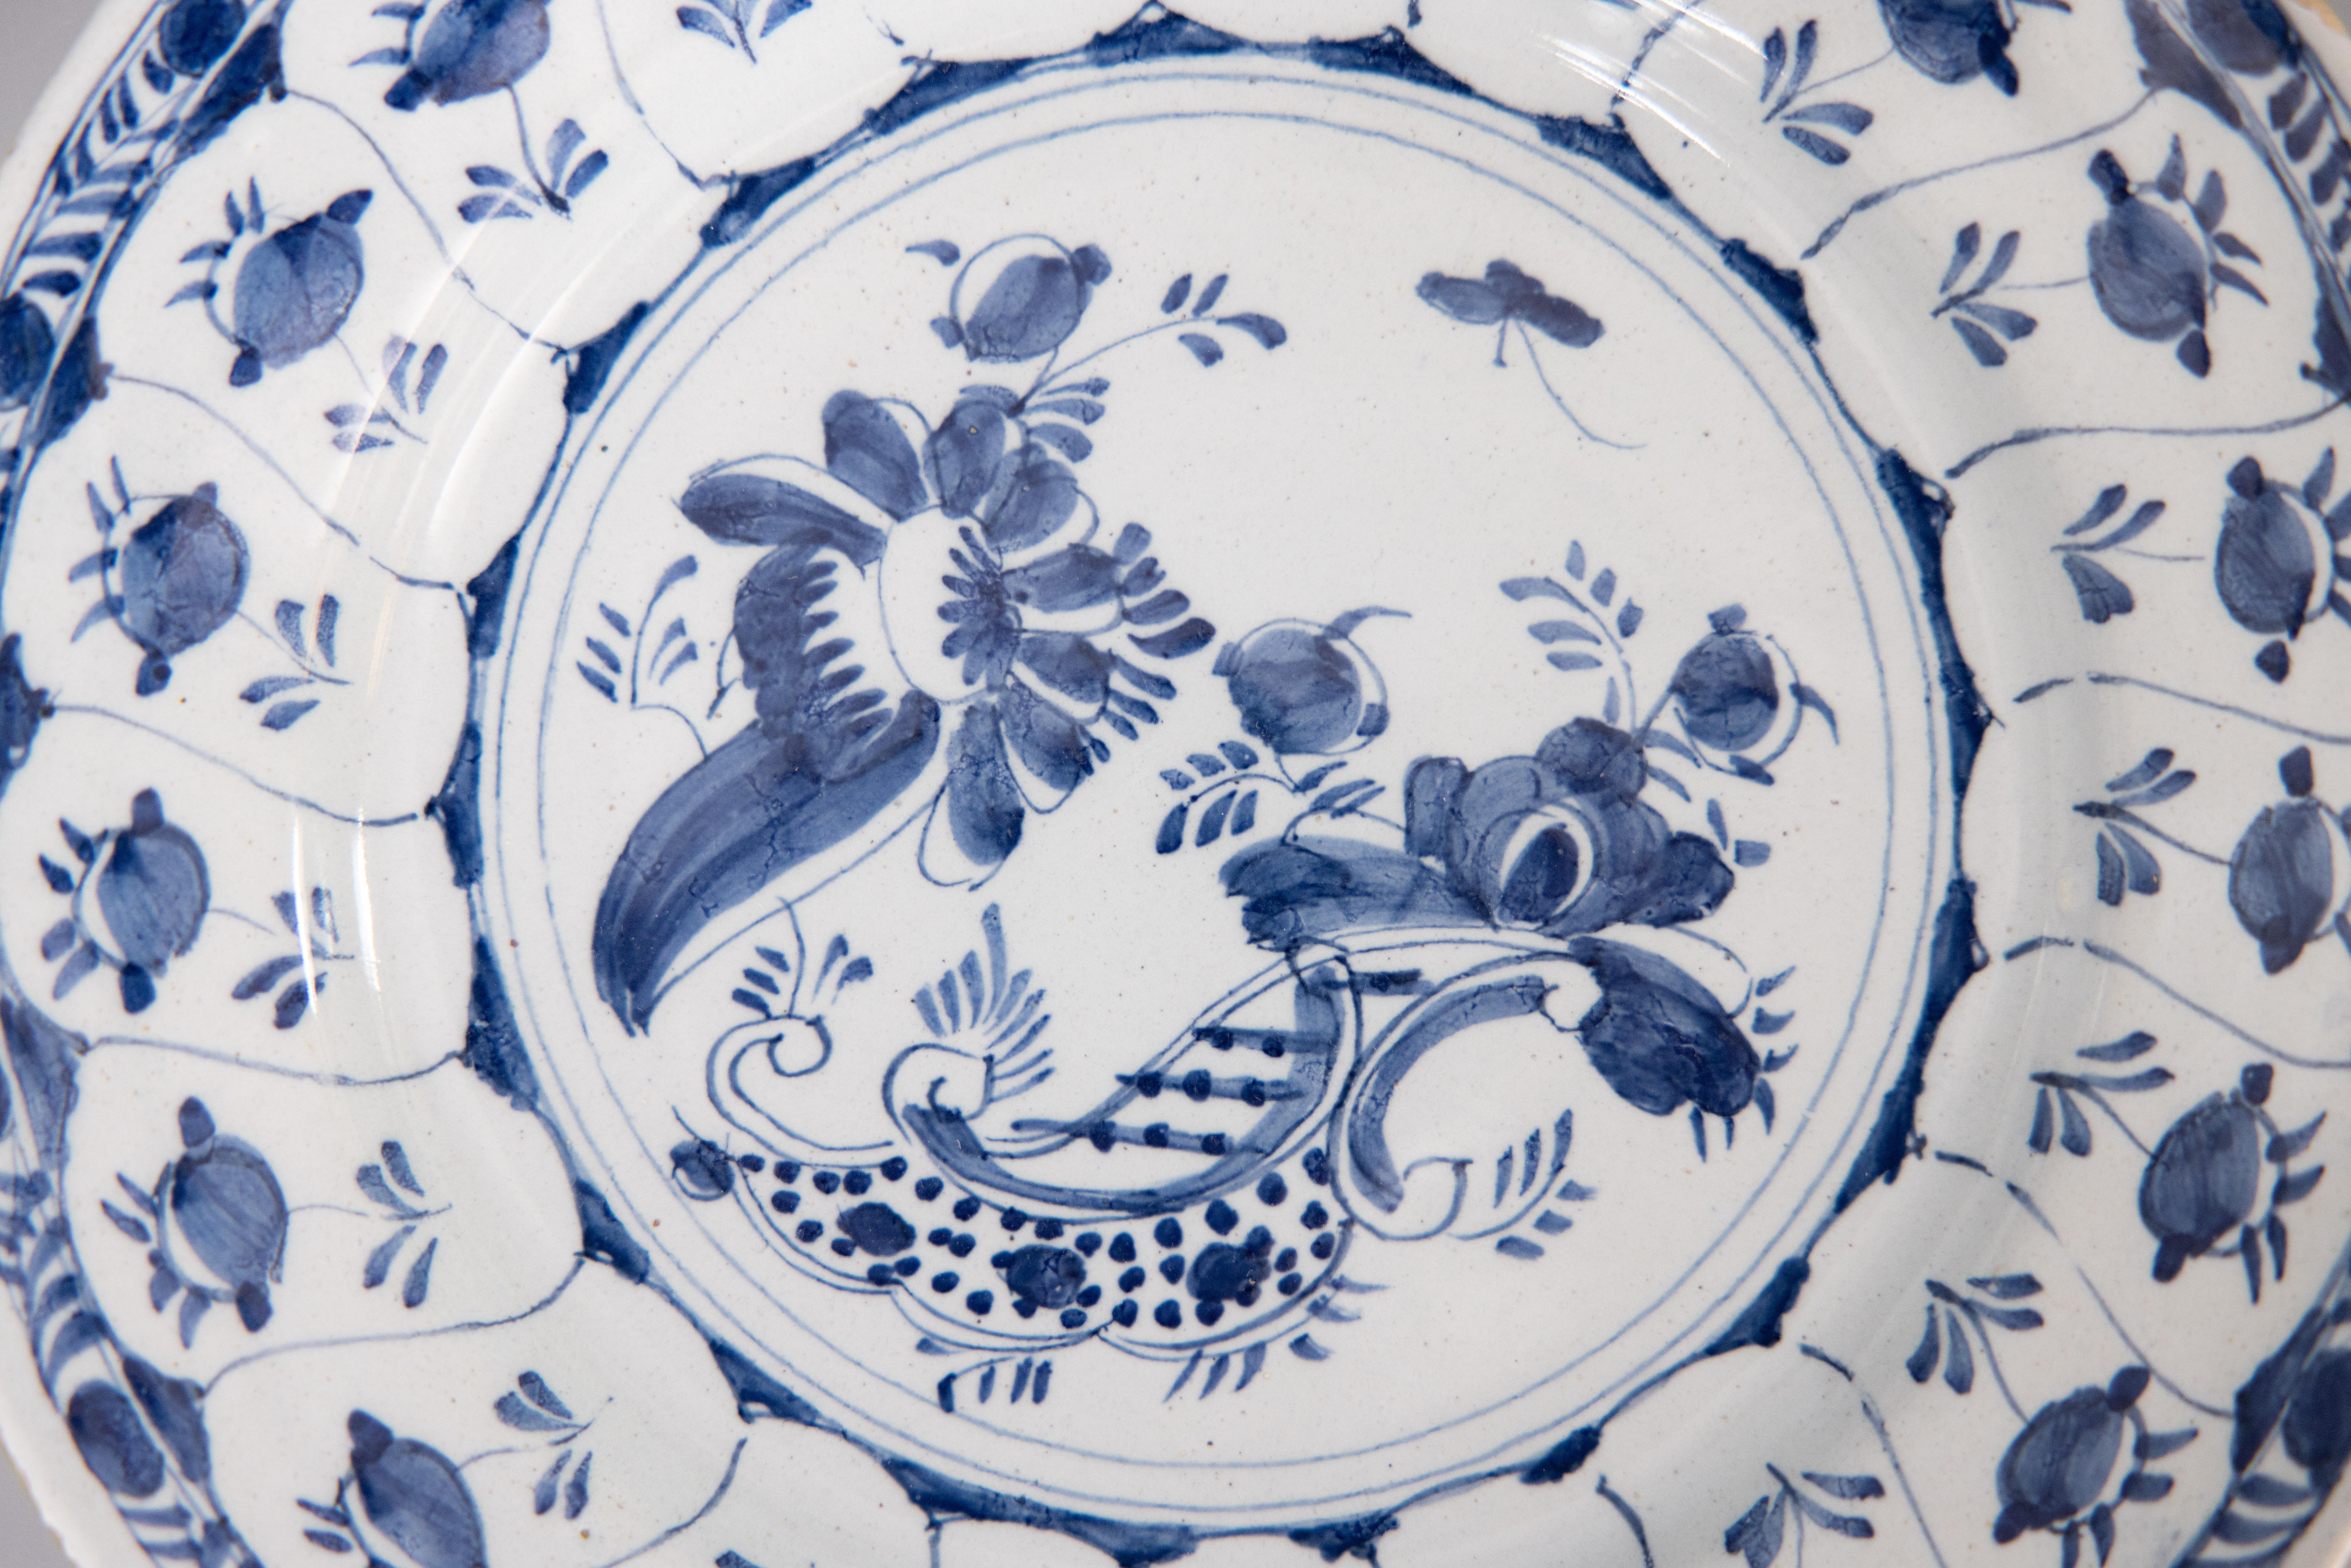 Superbe assiette florale en faïence hollandaise de Delft du 18e siècle. Cette jolie assiette est ornée de fleurs, d'un papillon et d'une bordure feuillue peints à la main en bleu cobalt et blanc. Elle serait merveilleusement ajoutée à une